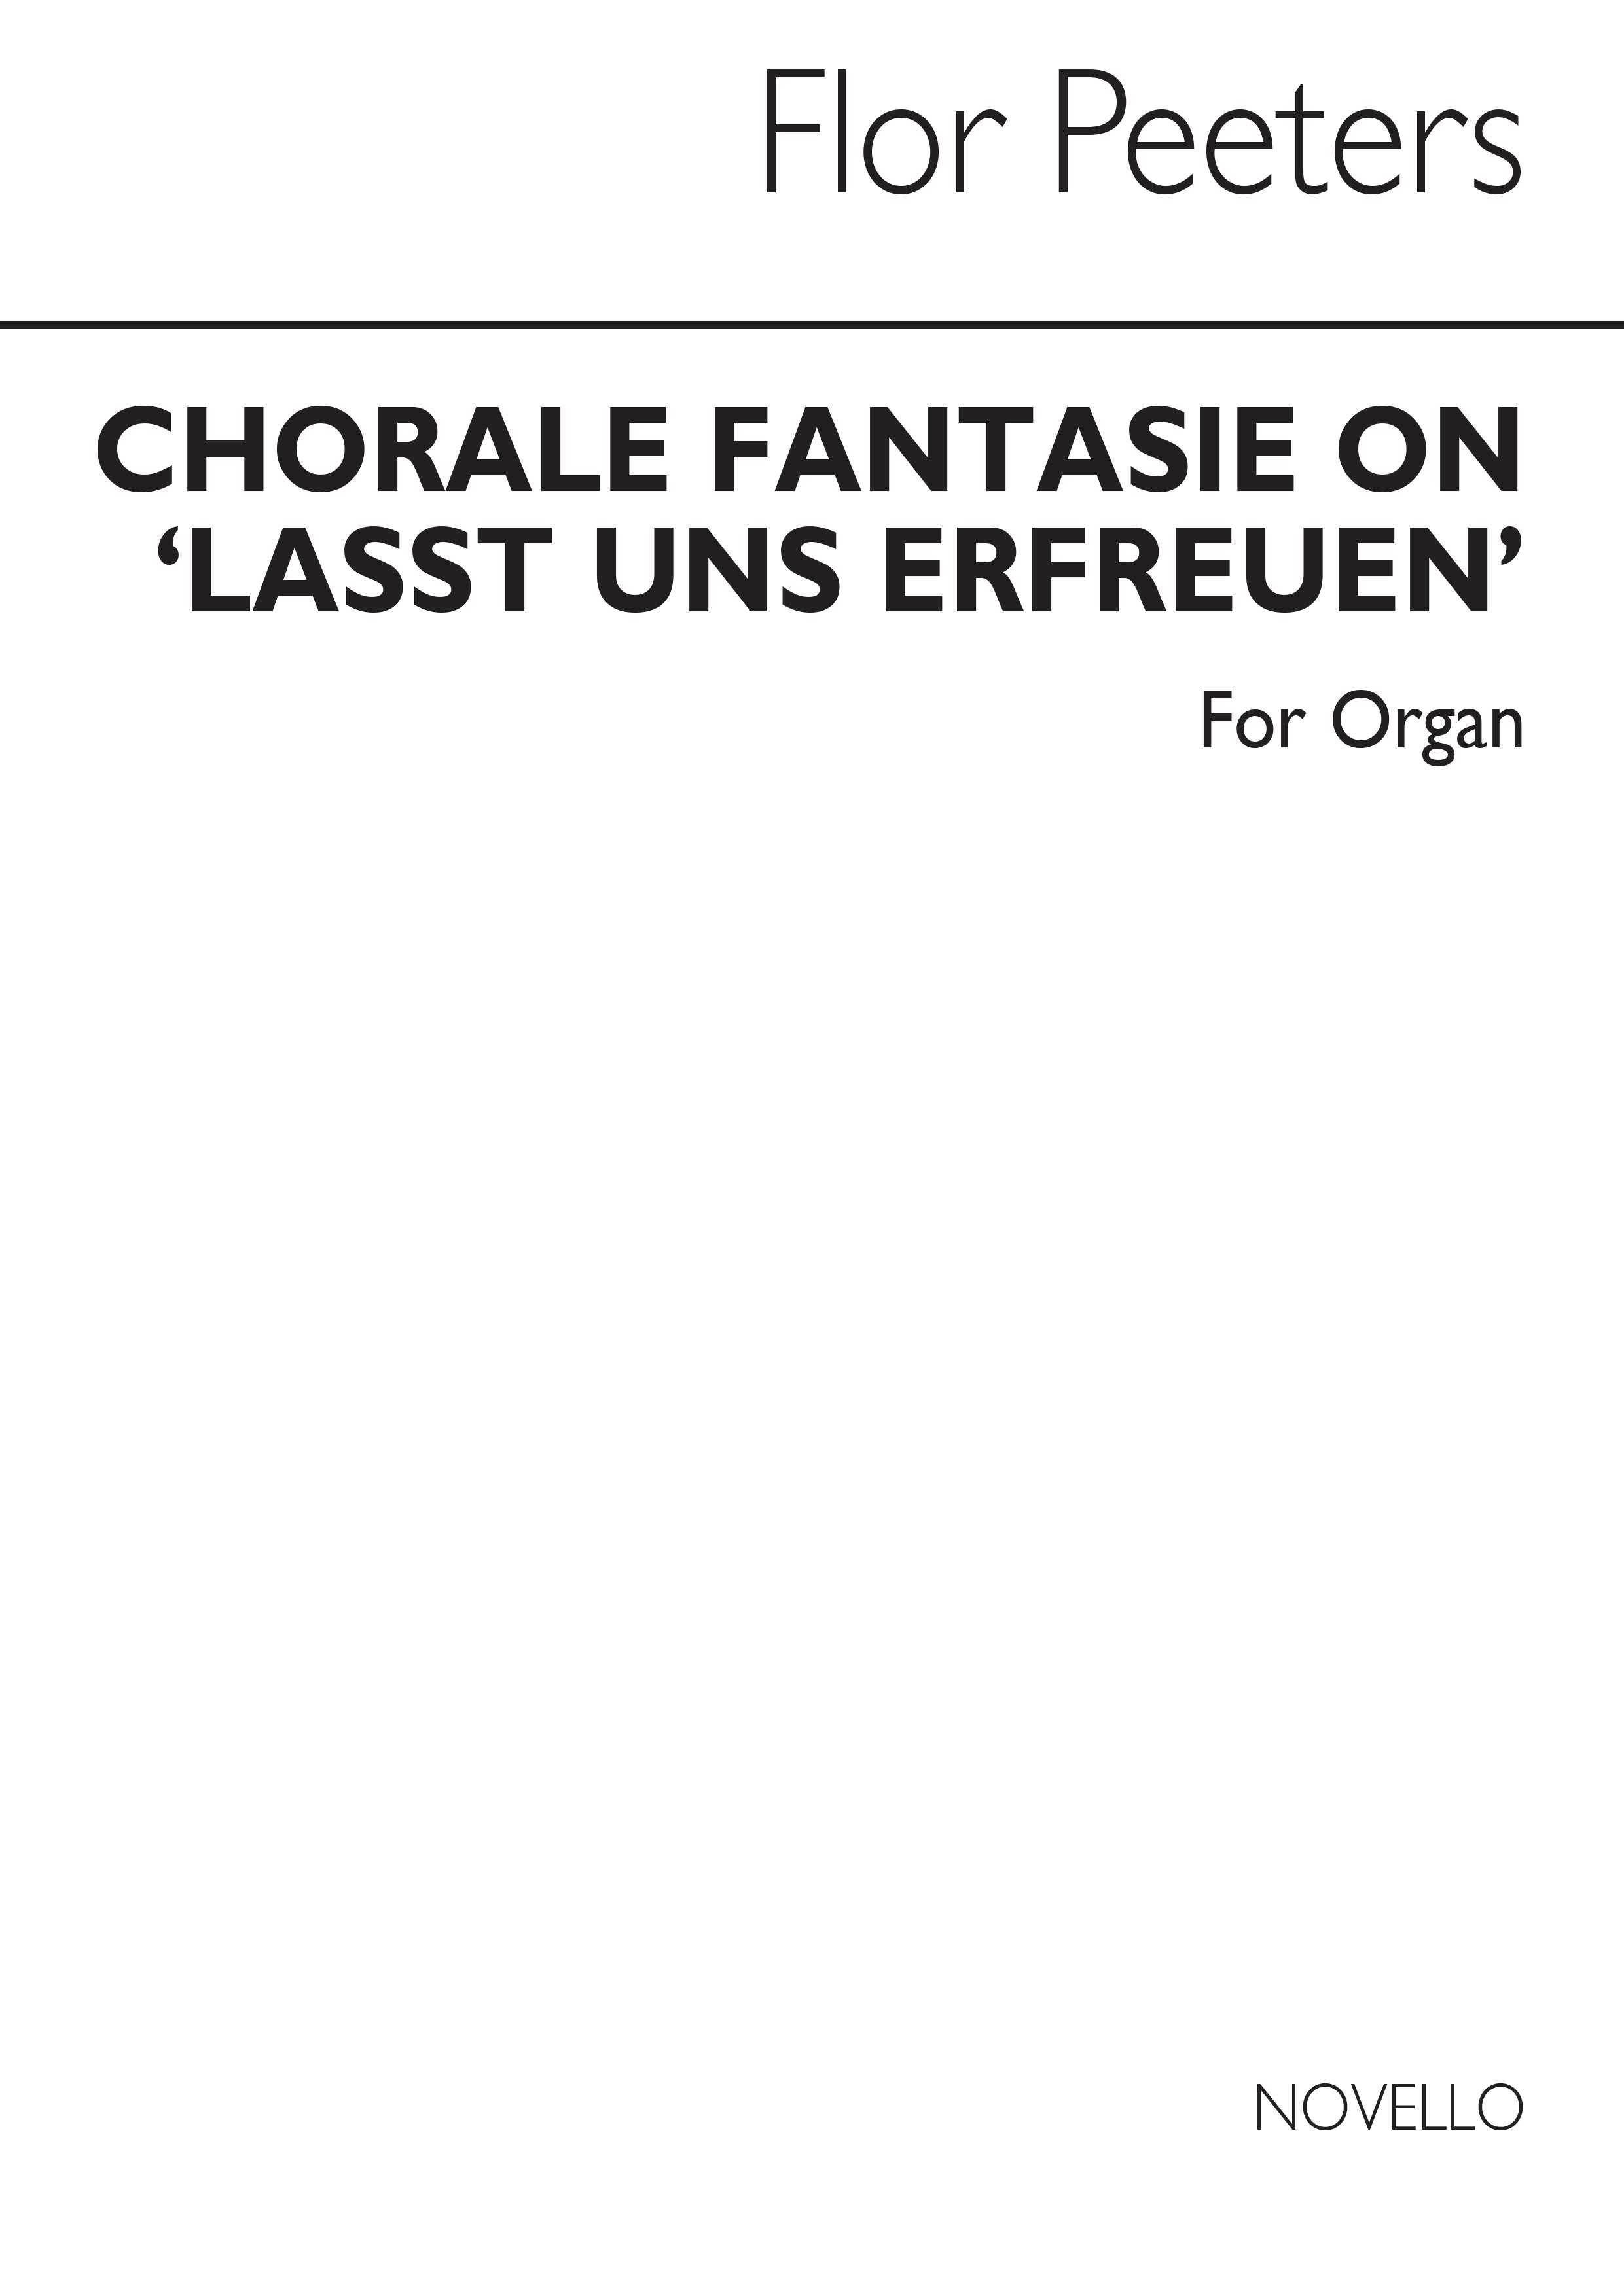 Flor Peeters: Choral Fantasie On Loast Un Erfreu For: Organ: Instrumental Work